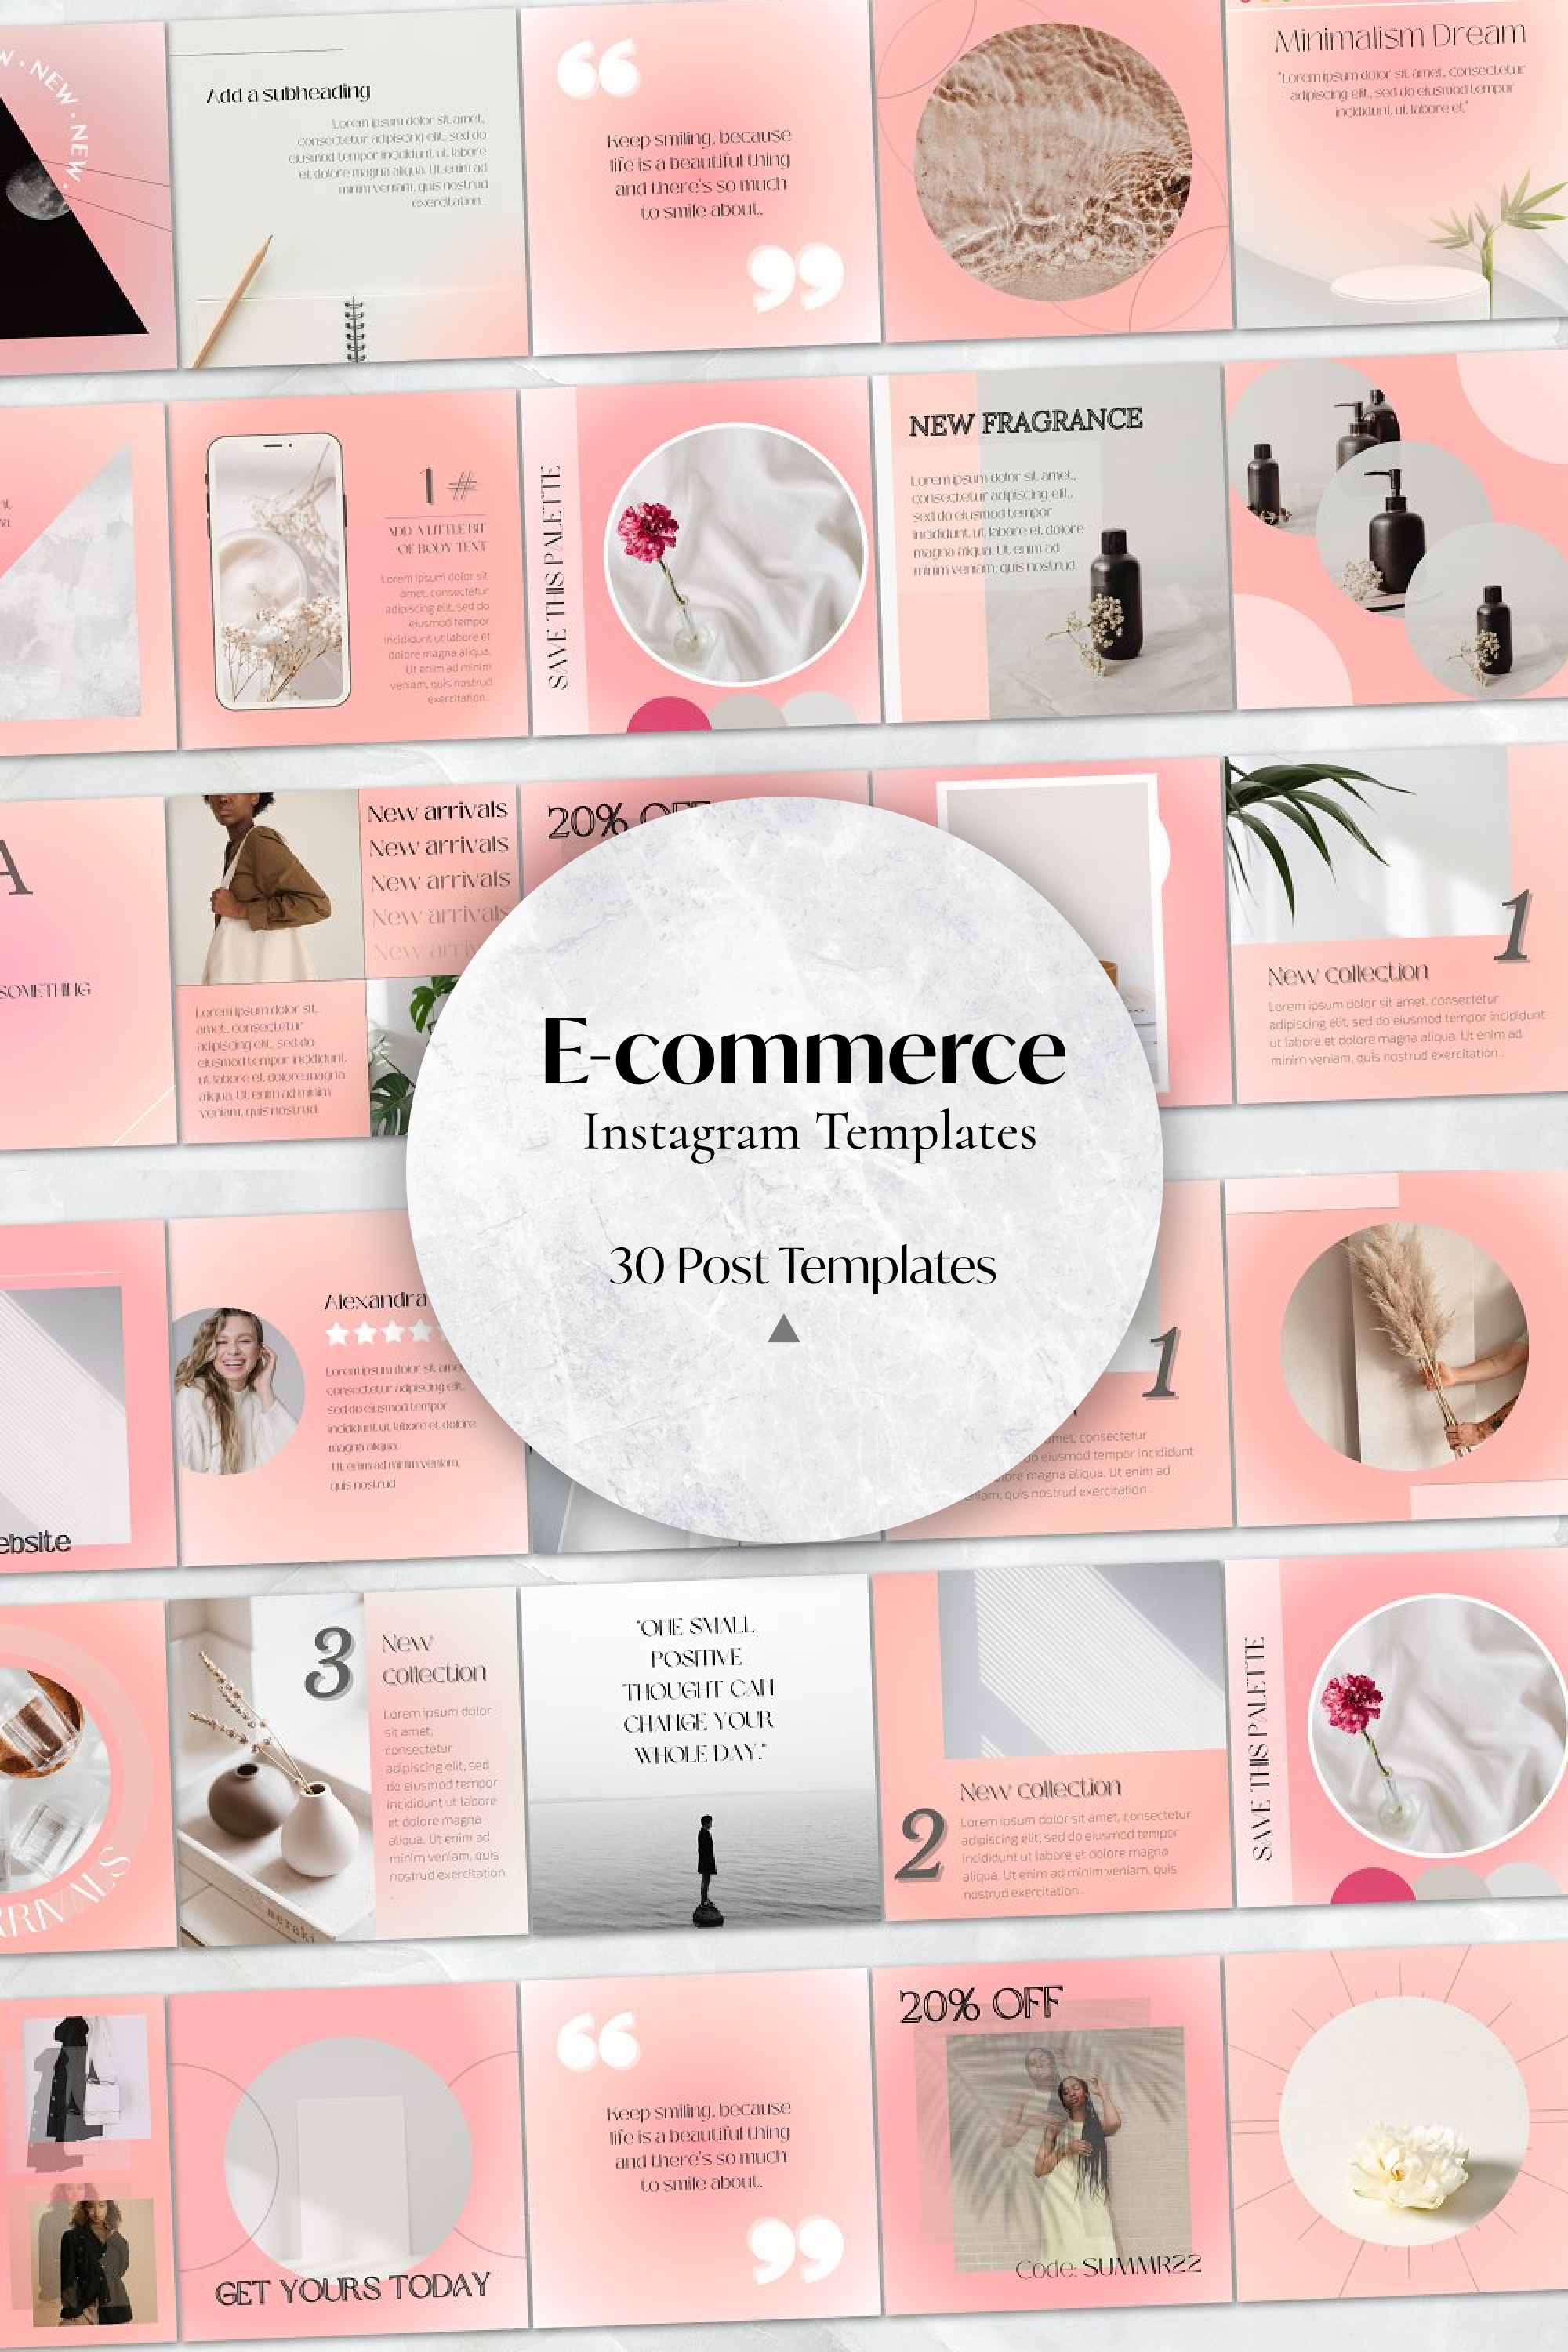 E-commerce instagram templates of pinterest.